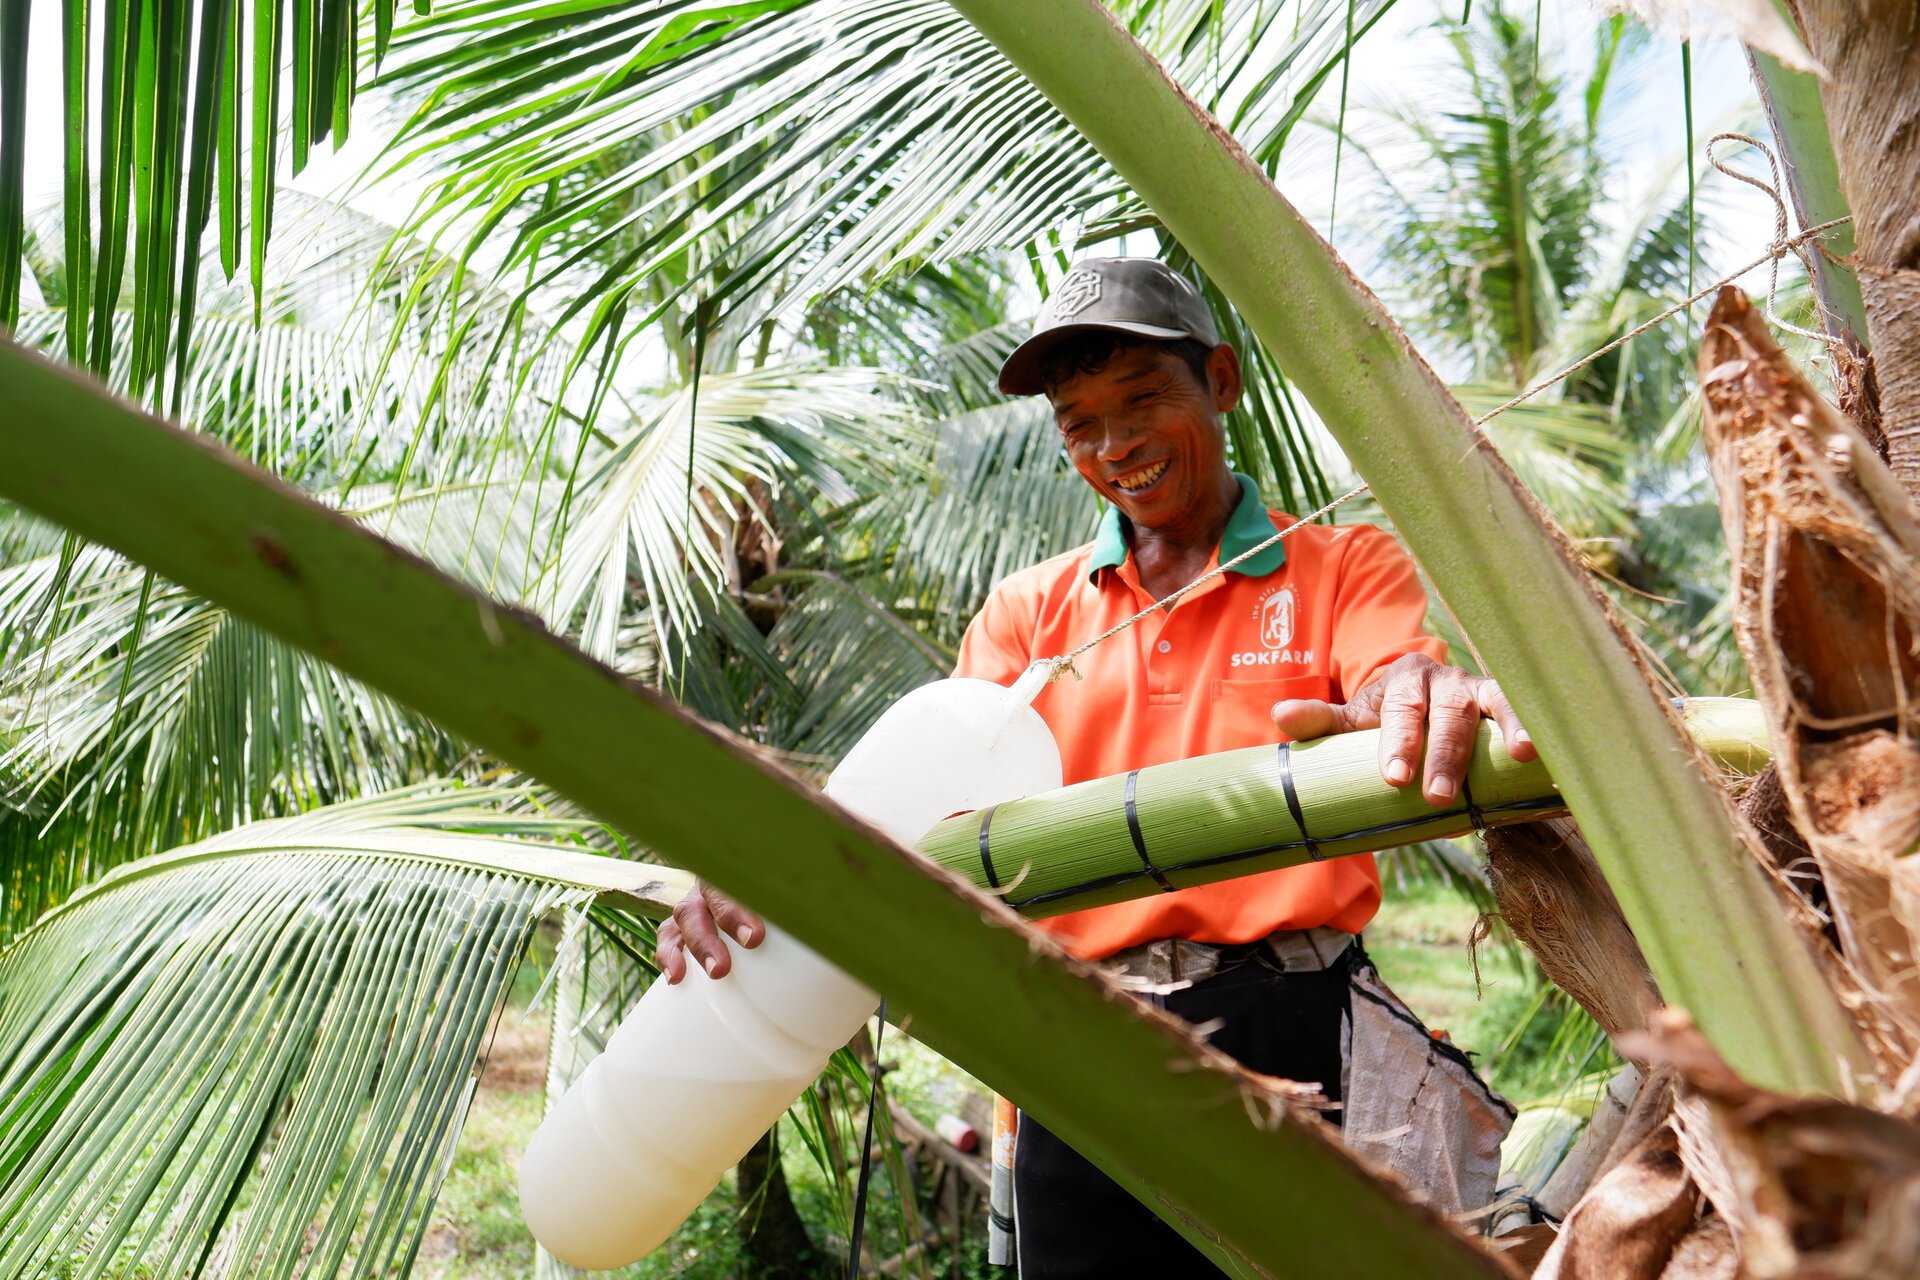 Hành trình đi lấy mật hoa dừa của Sokfarm. Dự án khởi nghiệp của Sokfarm giúp tăng giá trị kinh tế cây dừa gấp 3 lần và cải thiện sinh kế của đồng bào Khmer tỉnh Trà Vinh.